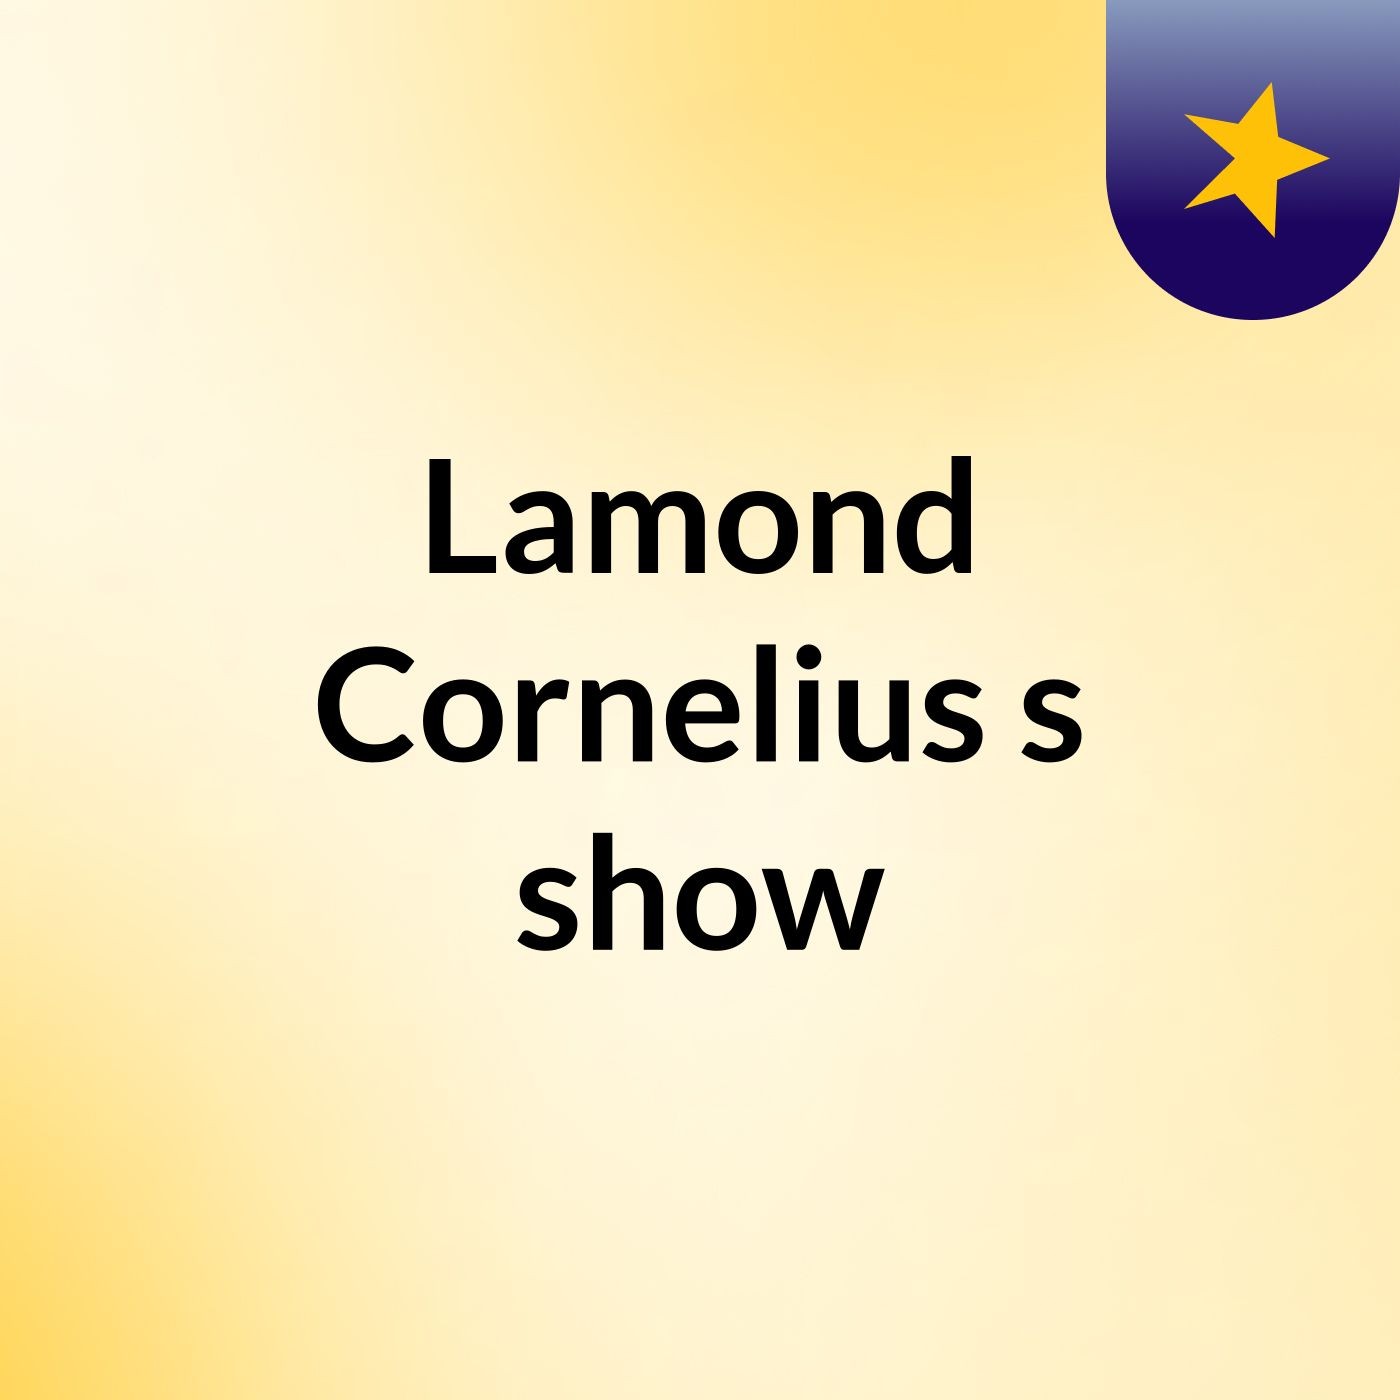 Lamond Cornelius's show